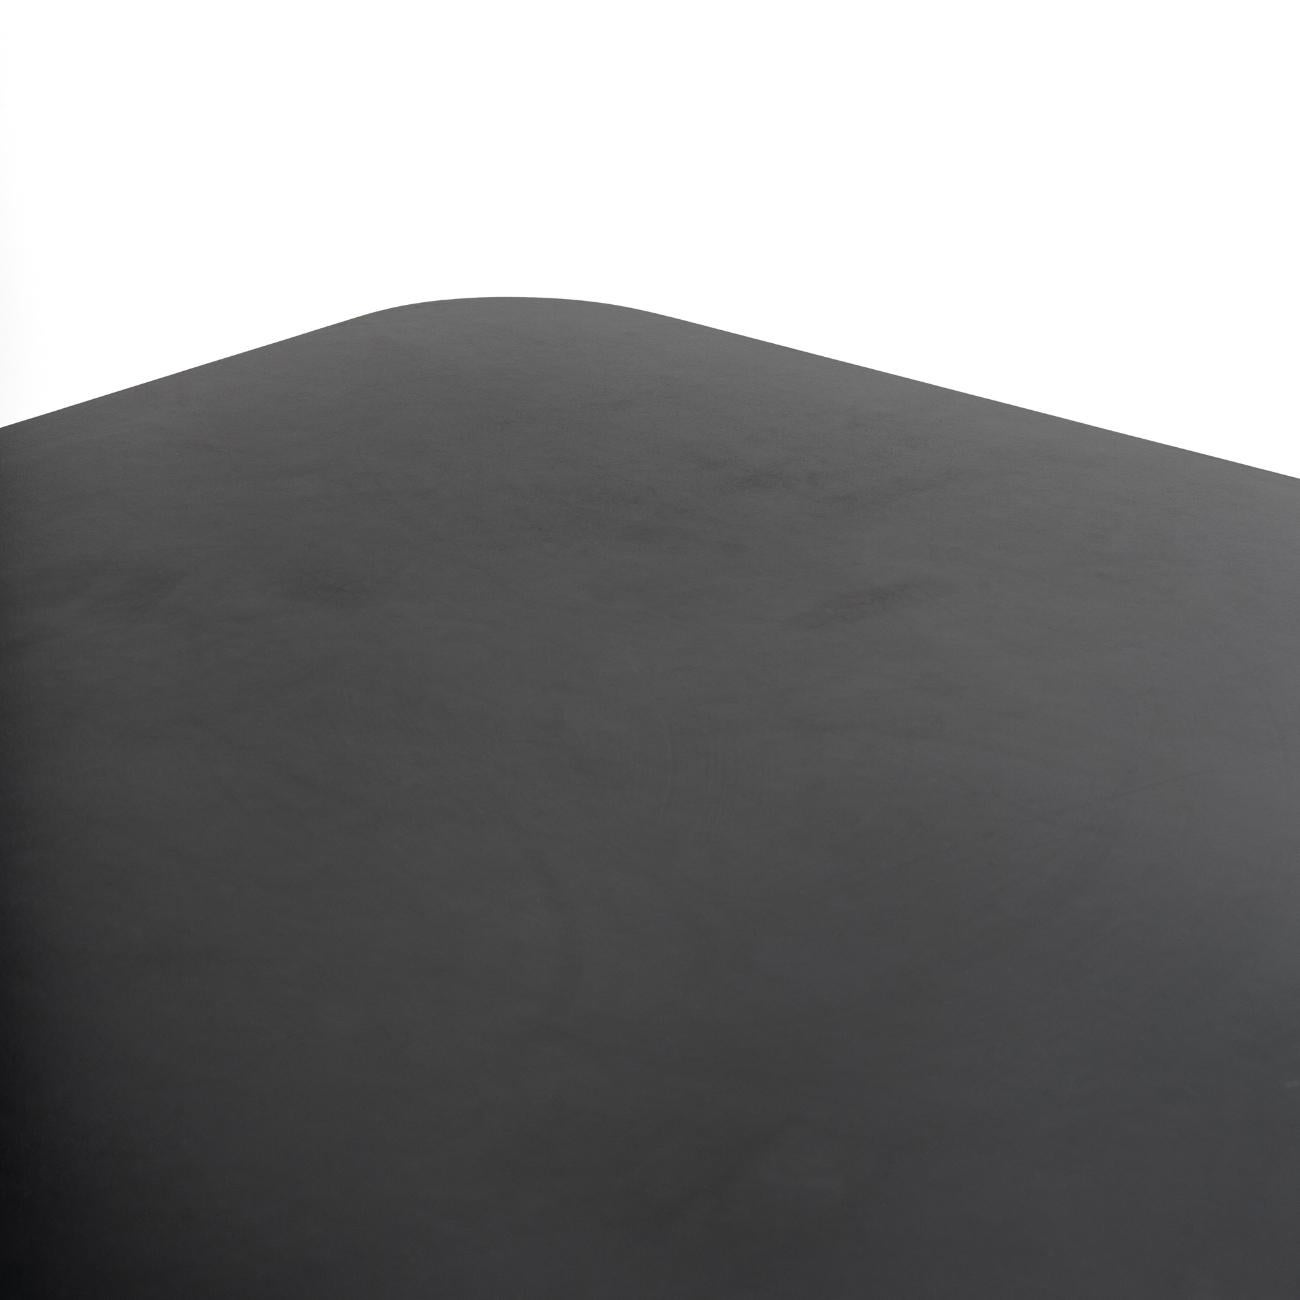 Table de salle à manger moderne, modèle TM40, conçue par Pierre Mazairac & Karel Boonzaaijer pour Pastoe, années 1980. Mince structure en acier émaillé noir, composée de tubes carrés, avec un plateau de table en bois carré fini en Formica noir.